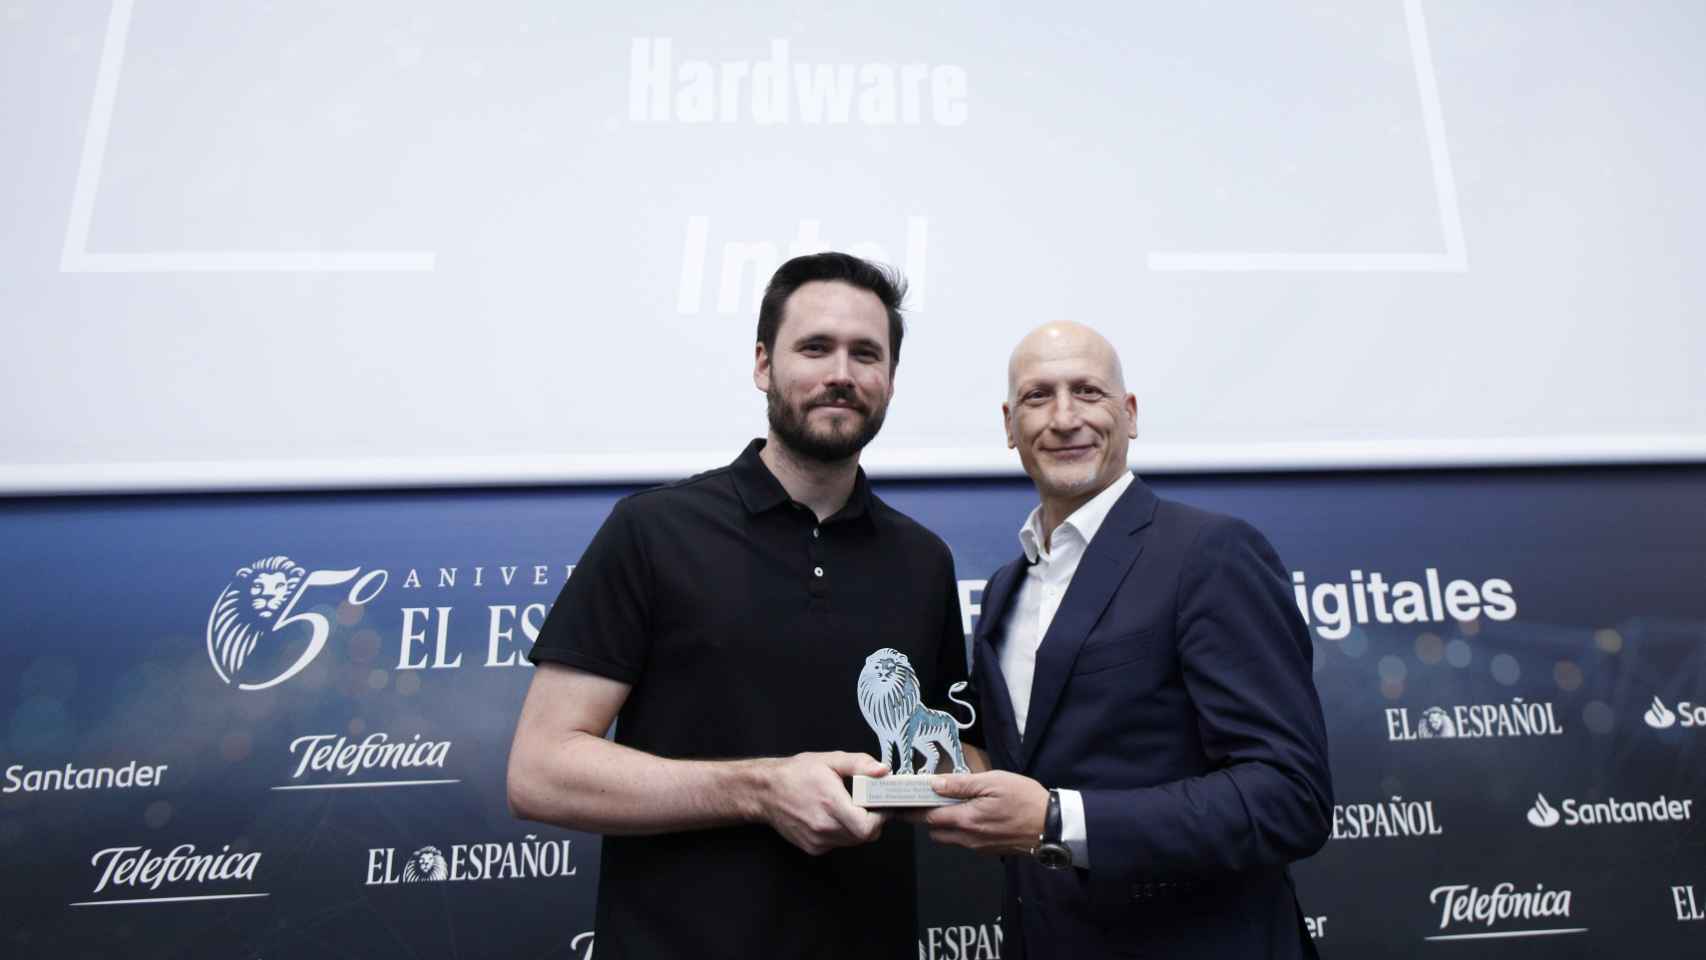 Categoría Hardware: Intel, Procesador Intel Core 9900KS. Recoge el premio Javier Galiana, EMEA Territory Consumer Sales Director para INTEL y entrega Dani Salas, co-fundador de Omicrono.